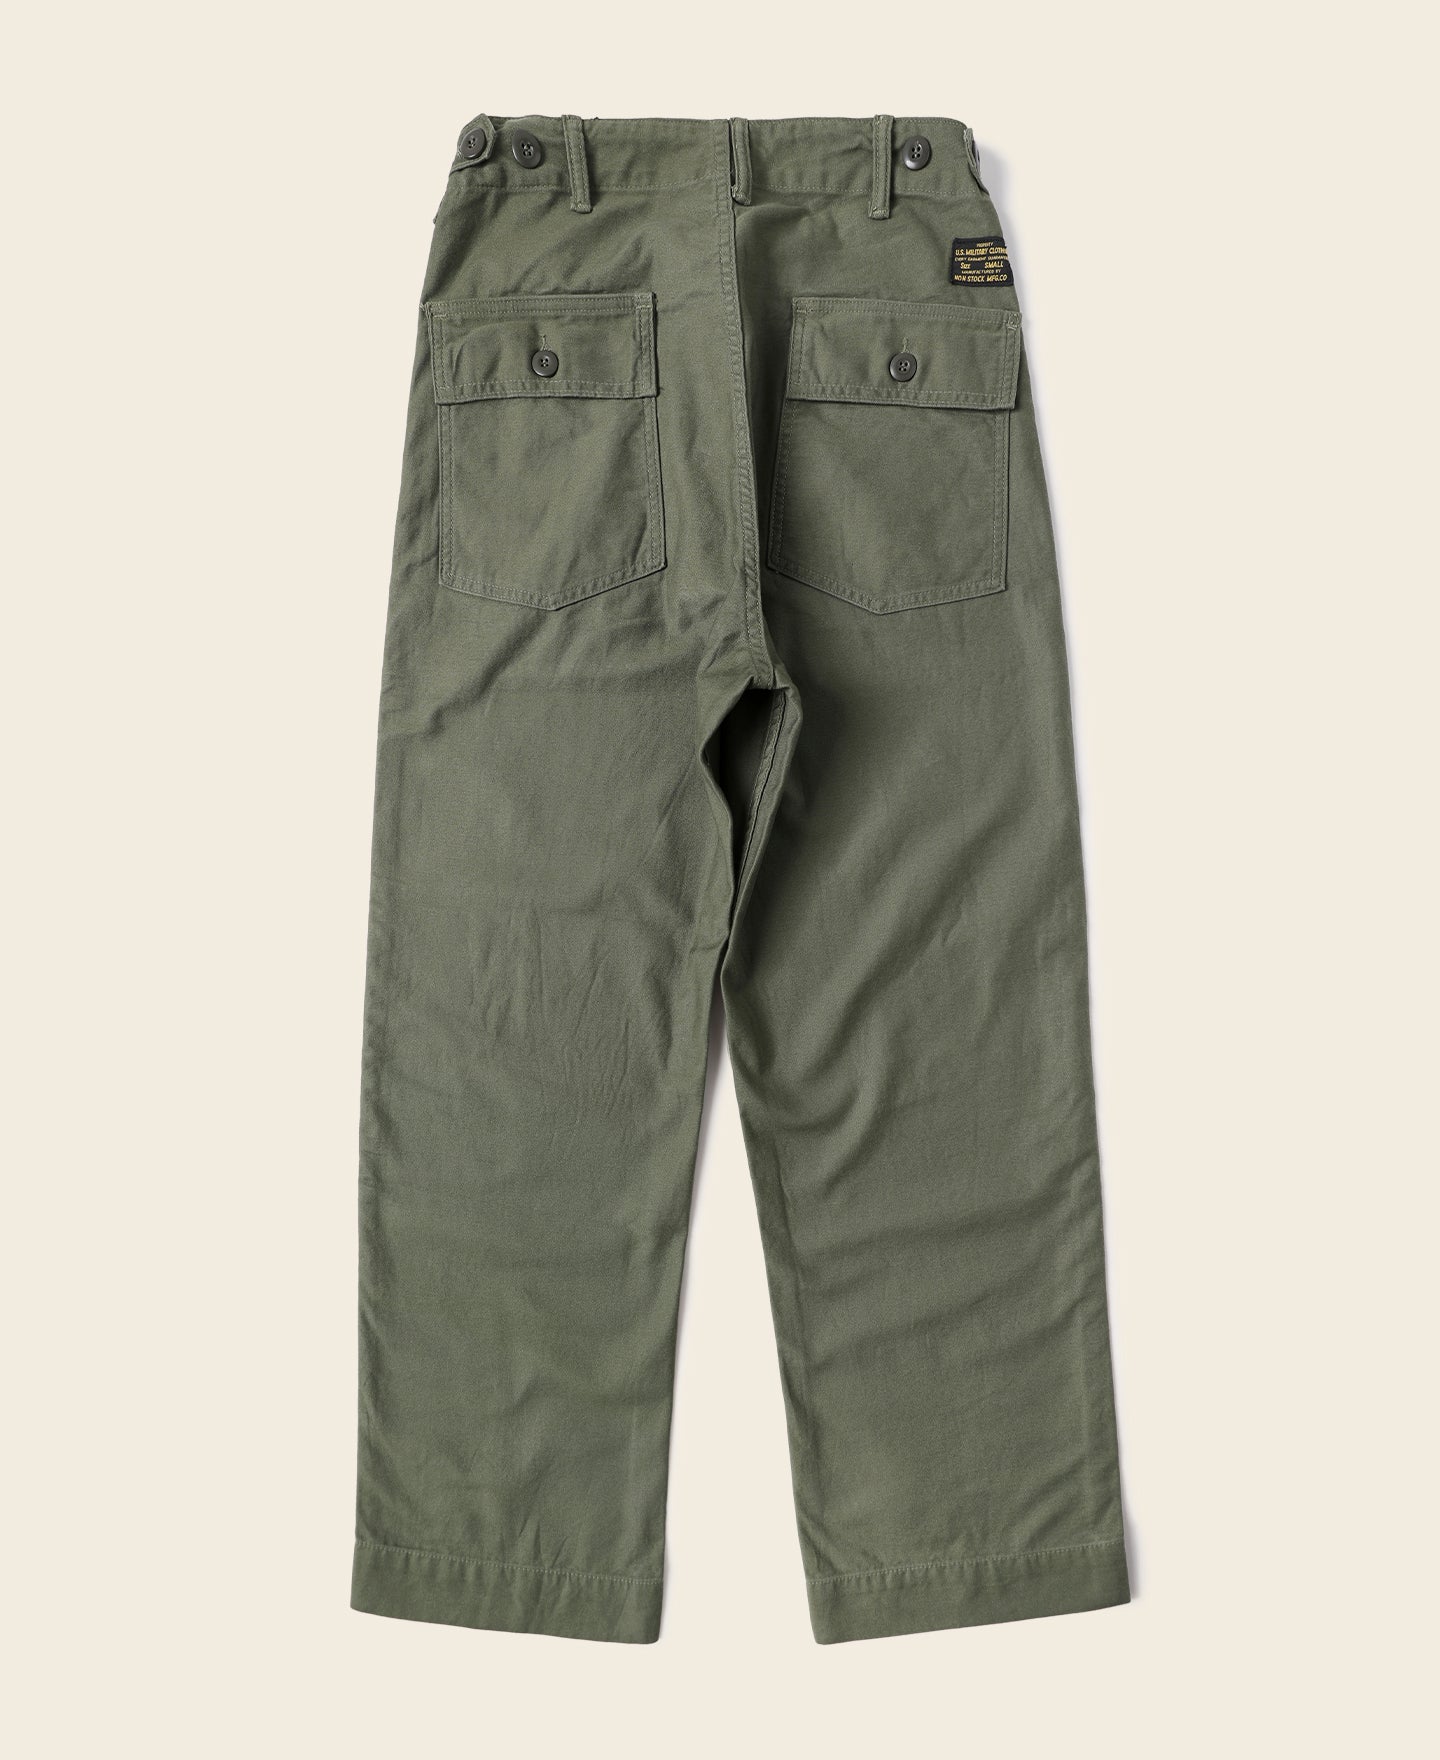 Mens Cargo Shorts Plus Size Short Pants Men Military India | Ubuy